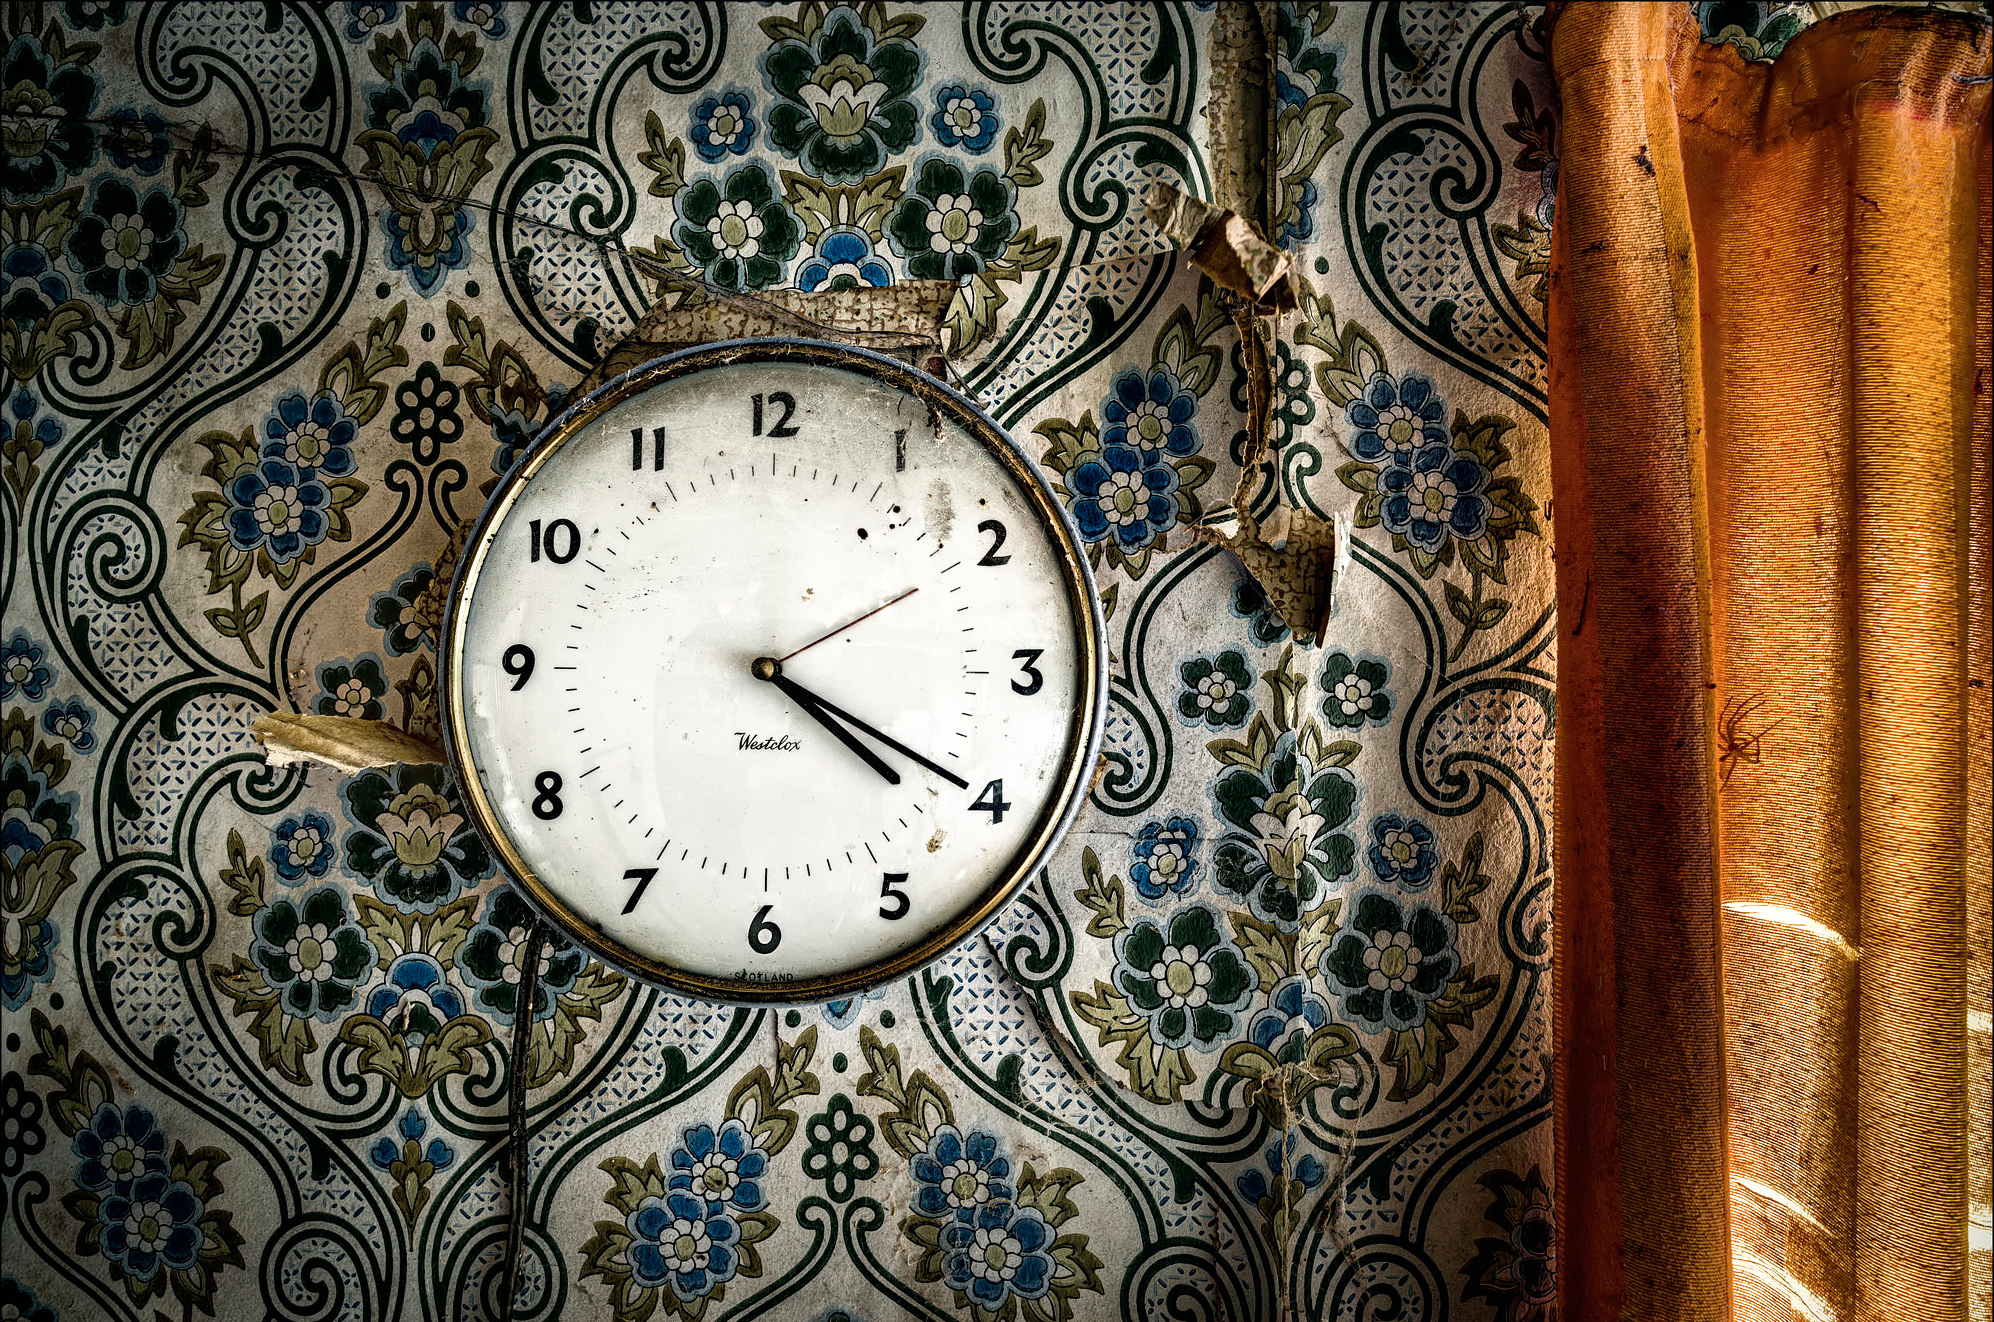 Фото обоев на часы. Старинные часы. Часы на стену. Старинные часы на стене. Фон с часами.